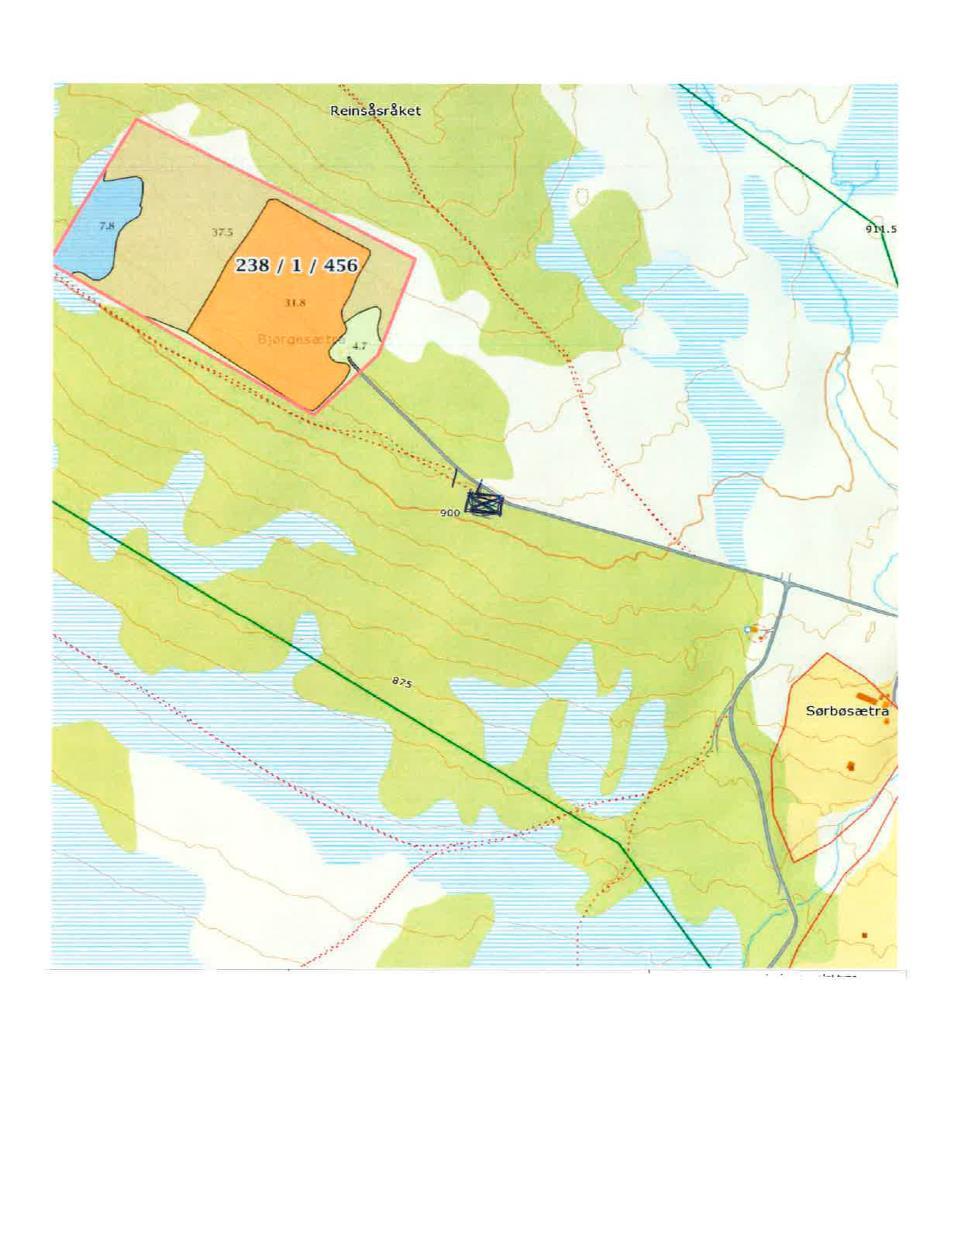 Saksopplysninger Bødal-Olstad vest sankelag søker om å kunne etablere ei ny sankekve for sau på Reinåsen i enden av Reinåsvegen, i området ved oppkjøringa til Bjørgesetra (se kart).